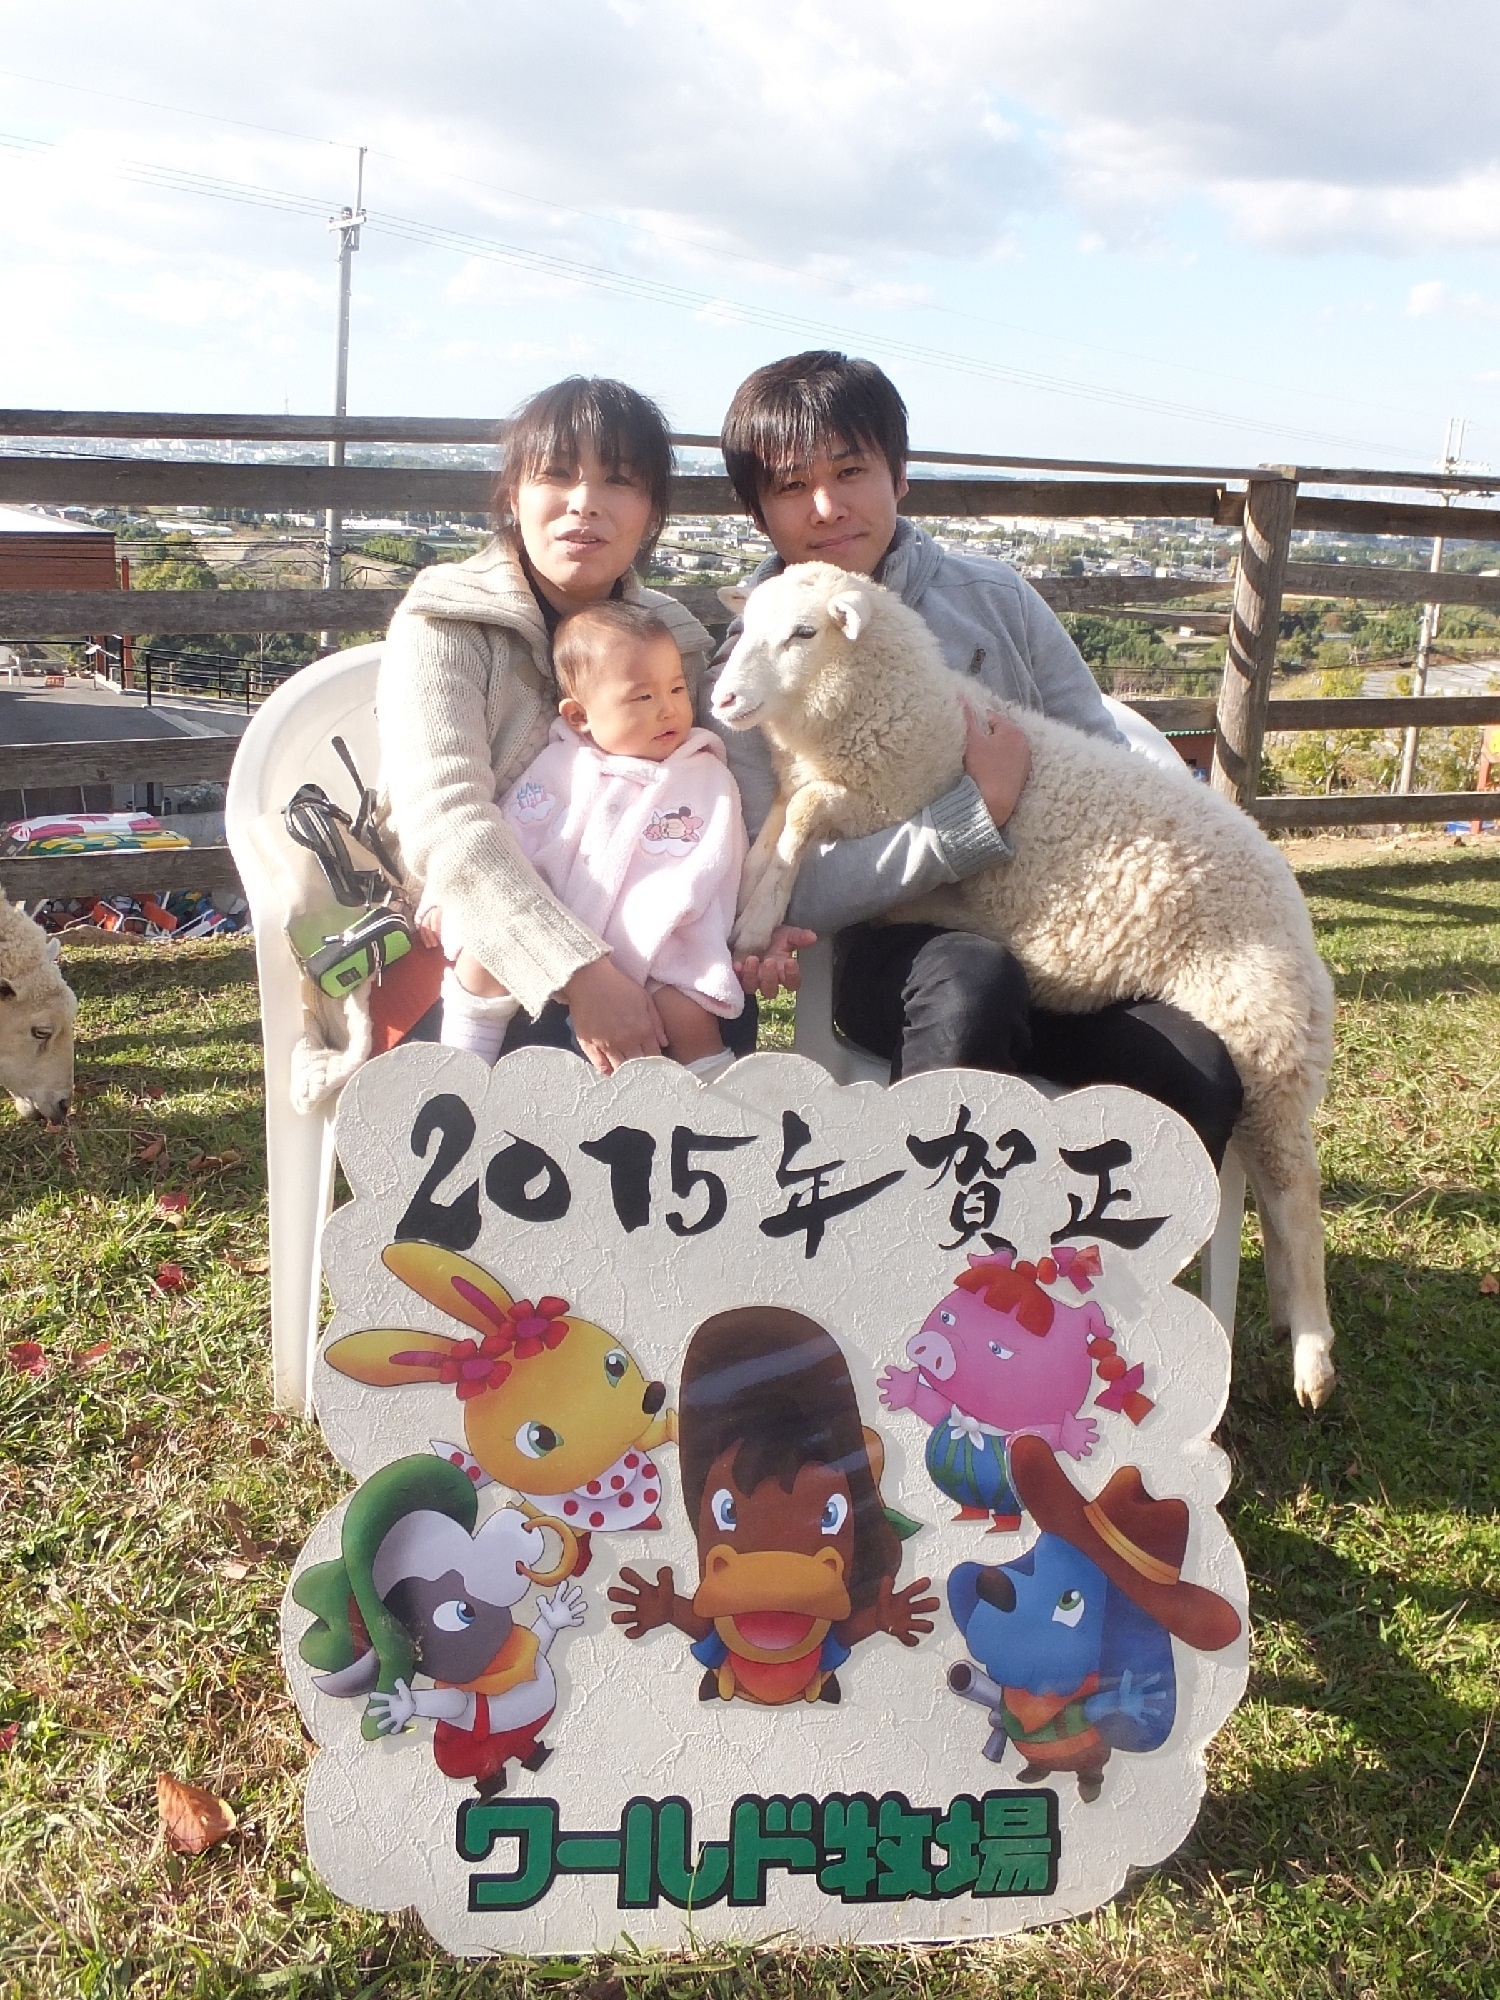 まだ間に合う 15年の干支 ヒツジ を抱っこして年賀状用の写真を撮れる撮影会を大阪 ワールド牧場で開催 有限会社ワールド牧場のプレスリリース